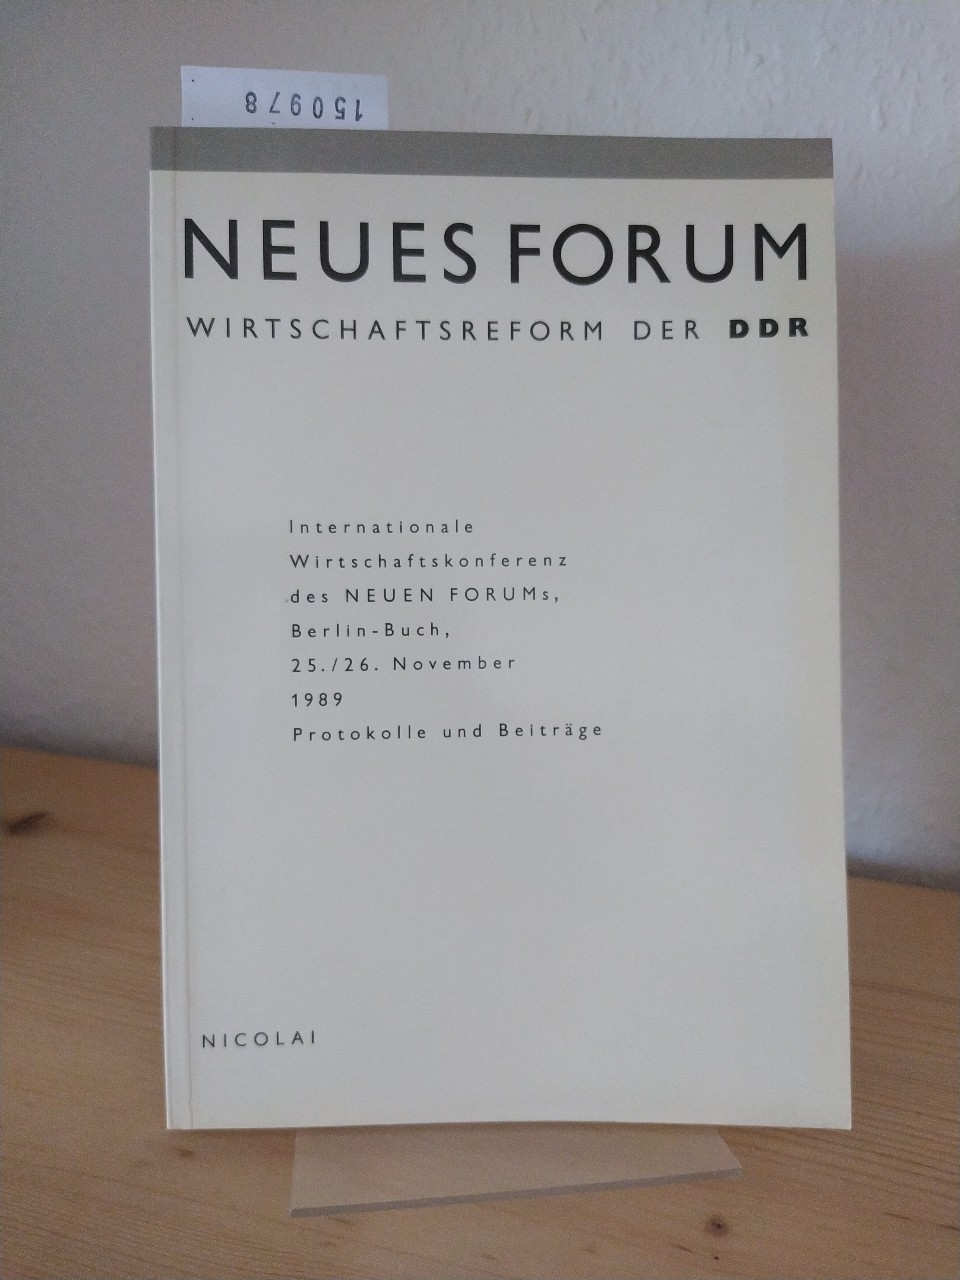 Neues Forum. Wirtschaftsforum der DDR. Internationale Wirtschaftskonferenz des Neuen Forums, Berlin-Buch, 25./26. November 1989. Protokolle und Beiträge.